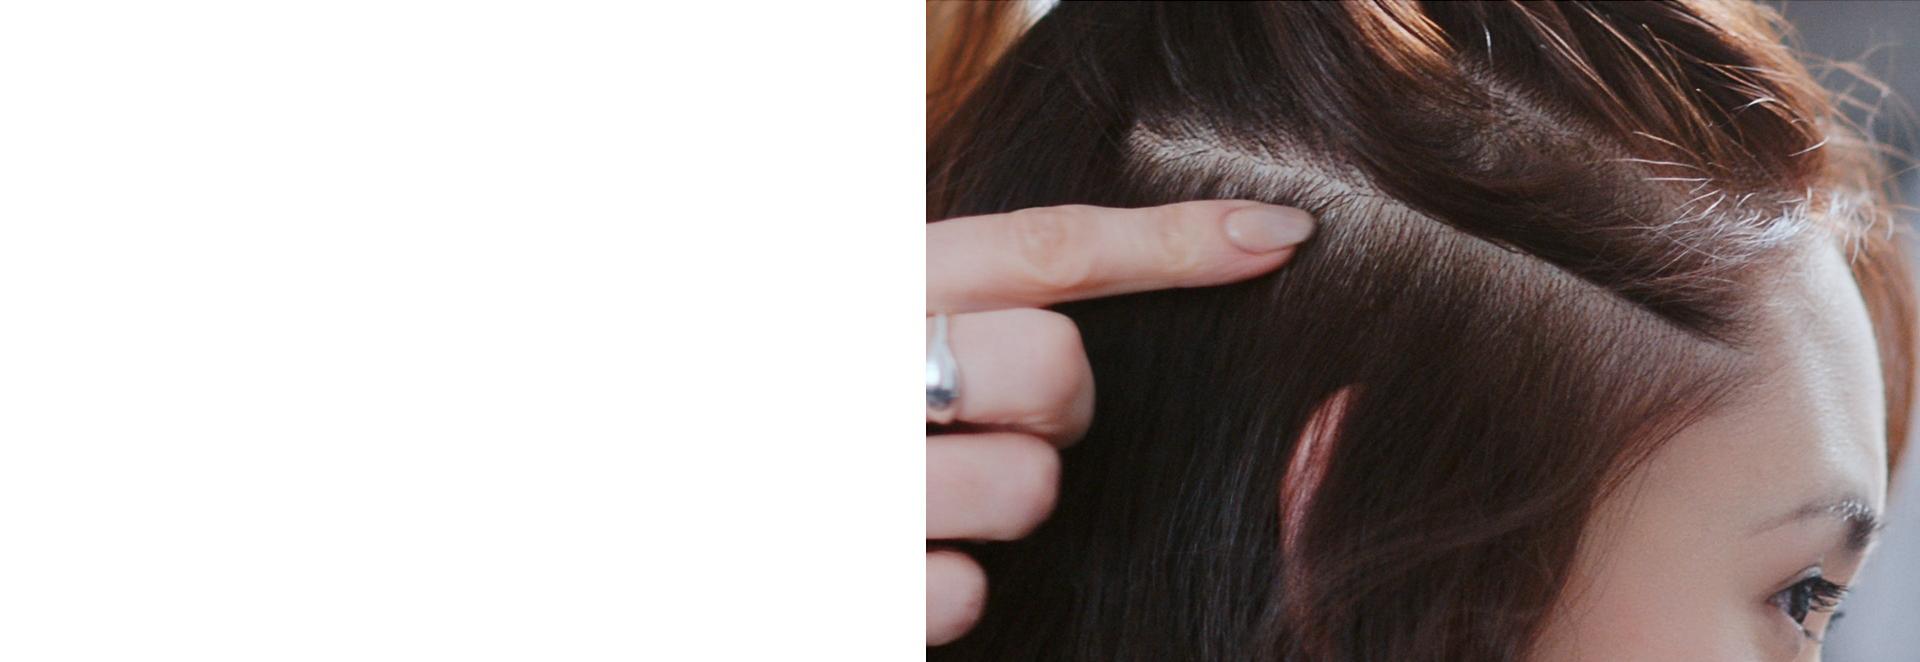 Amy Johnson hace una demostración del cuero cabelludo en un modelo